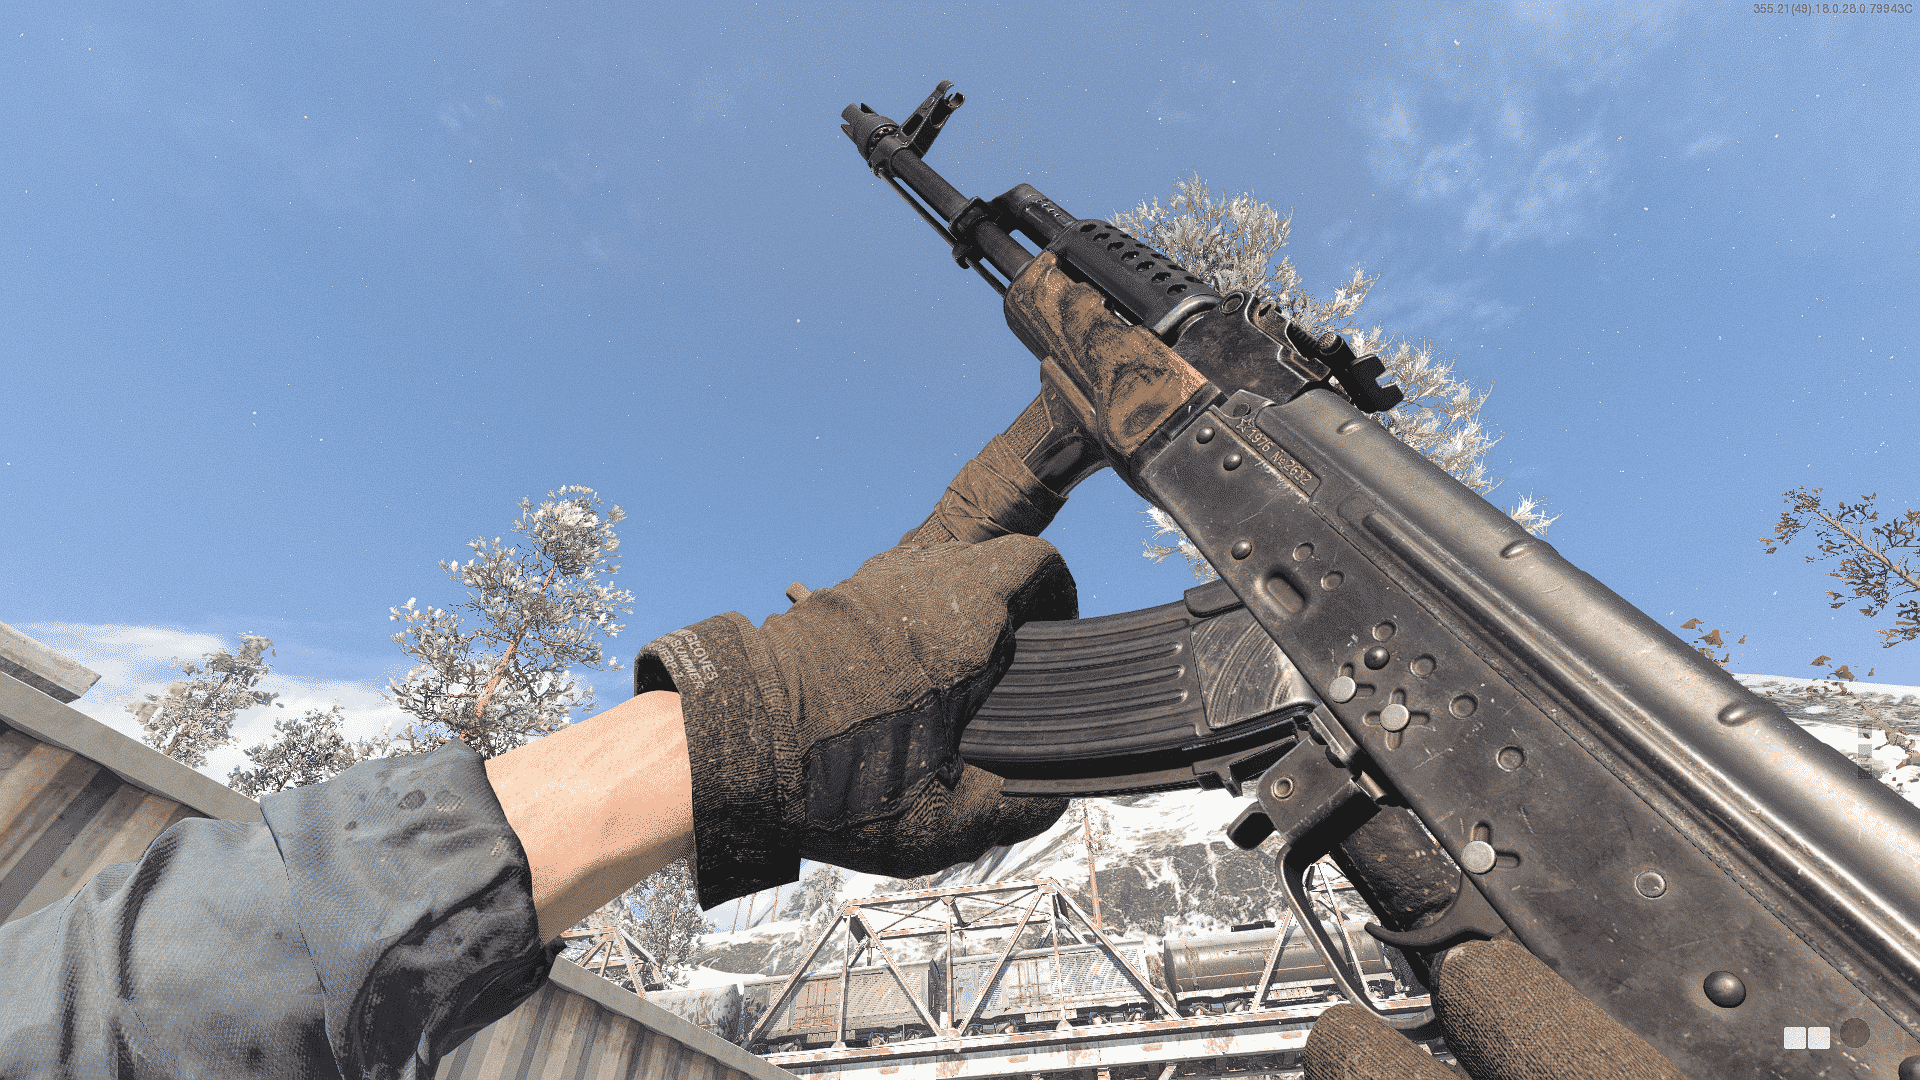 Black Ops Cold War AK-47 loadout